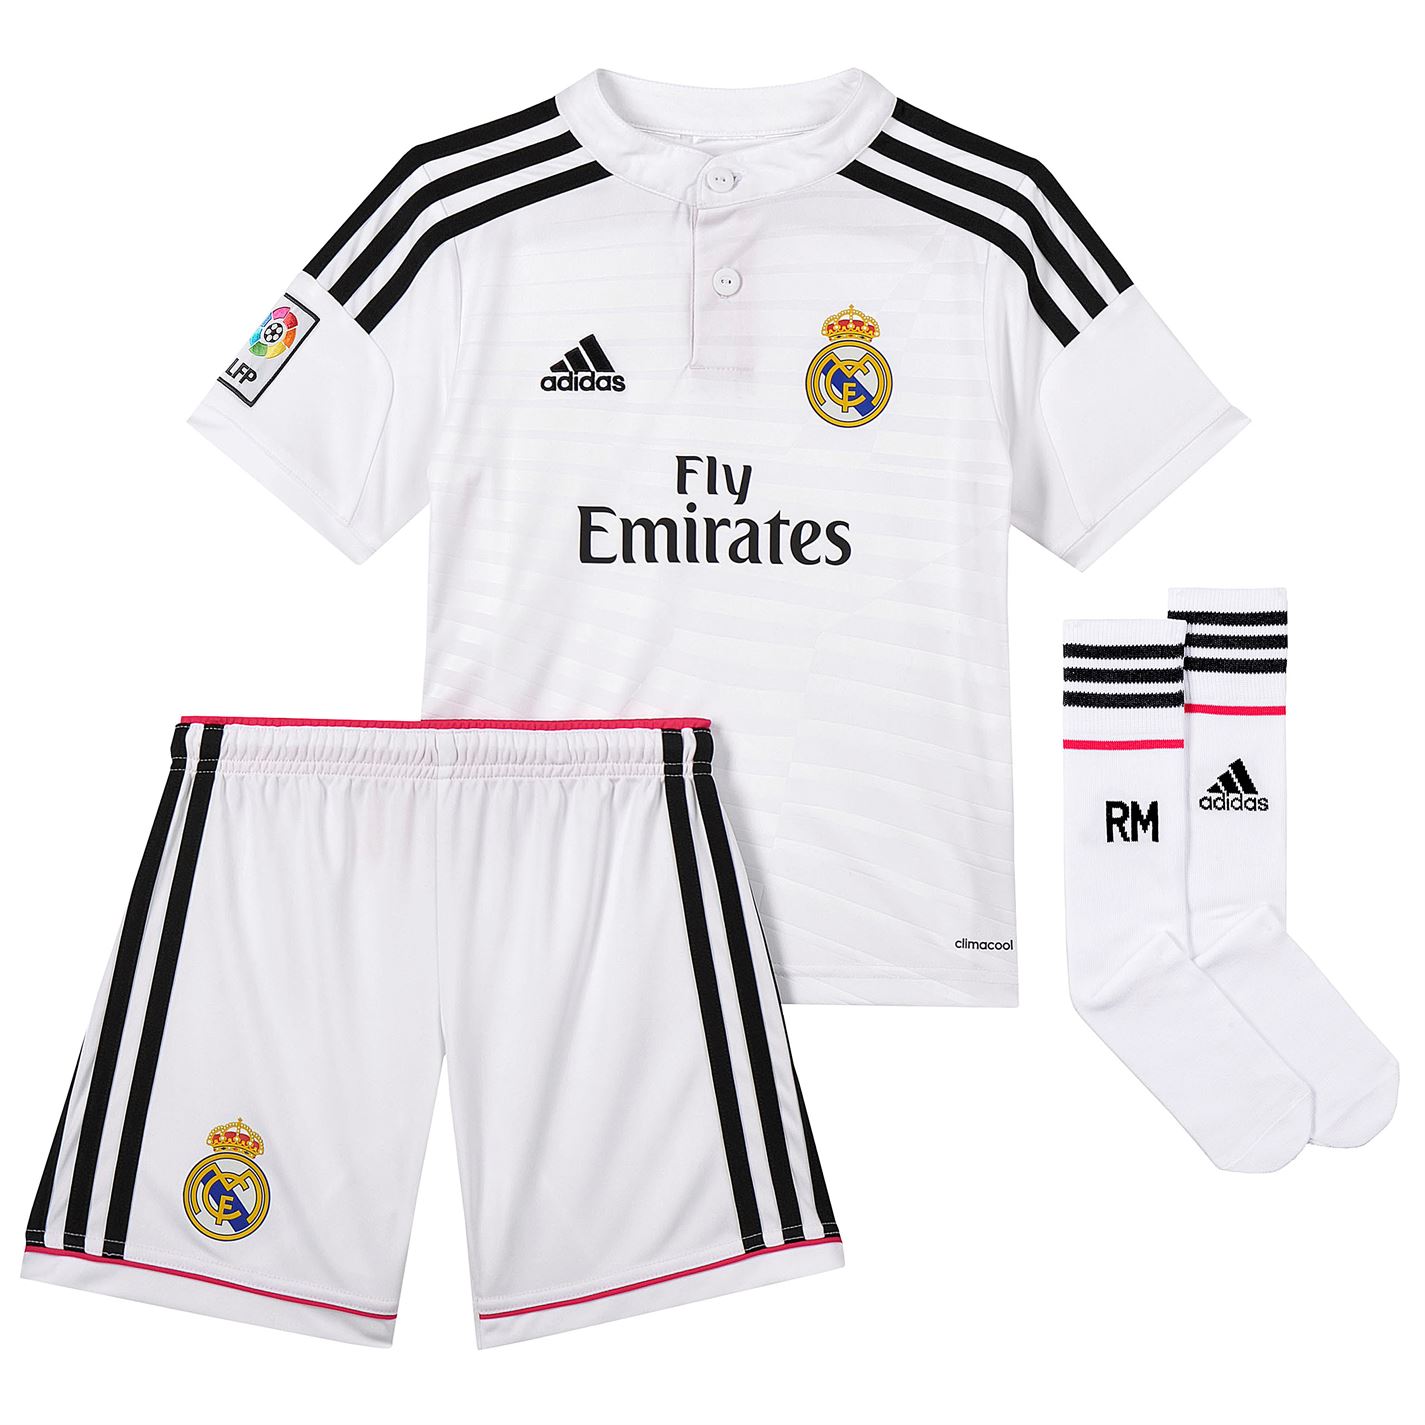 Adidas Real Madrid Schal 2018/2019 - kaufen & bestellen im ...